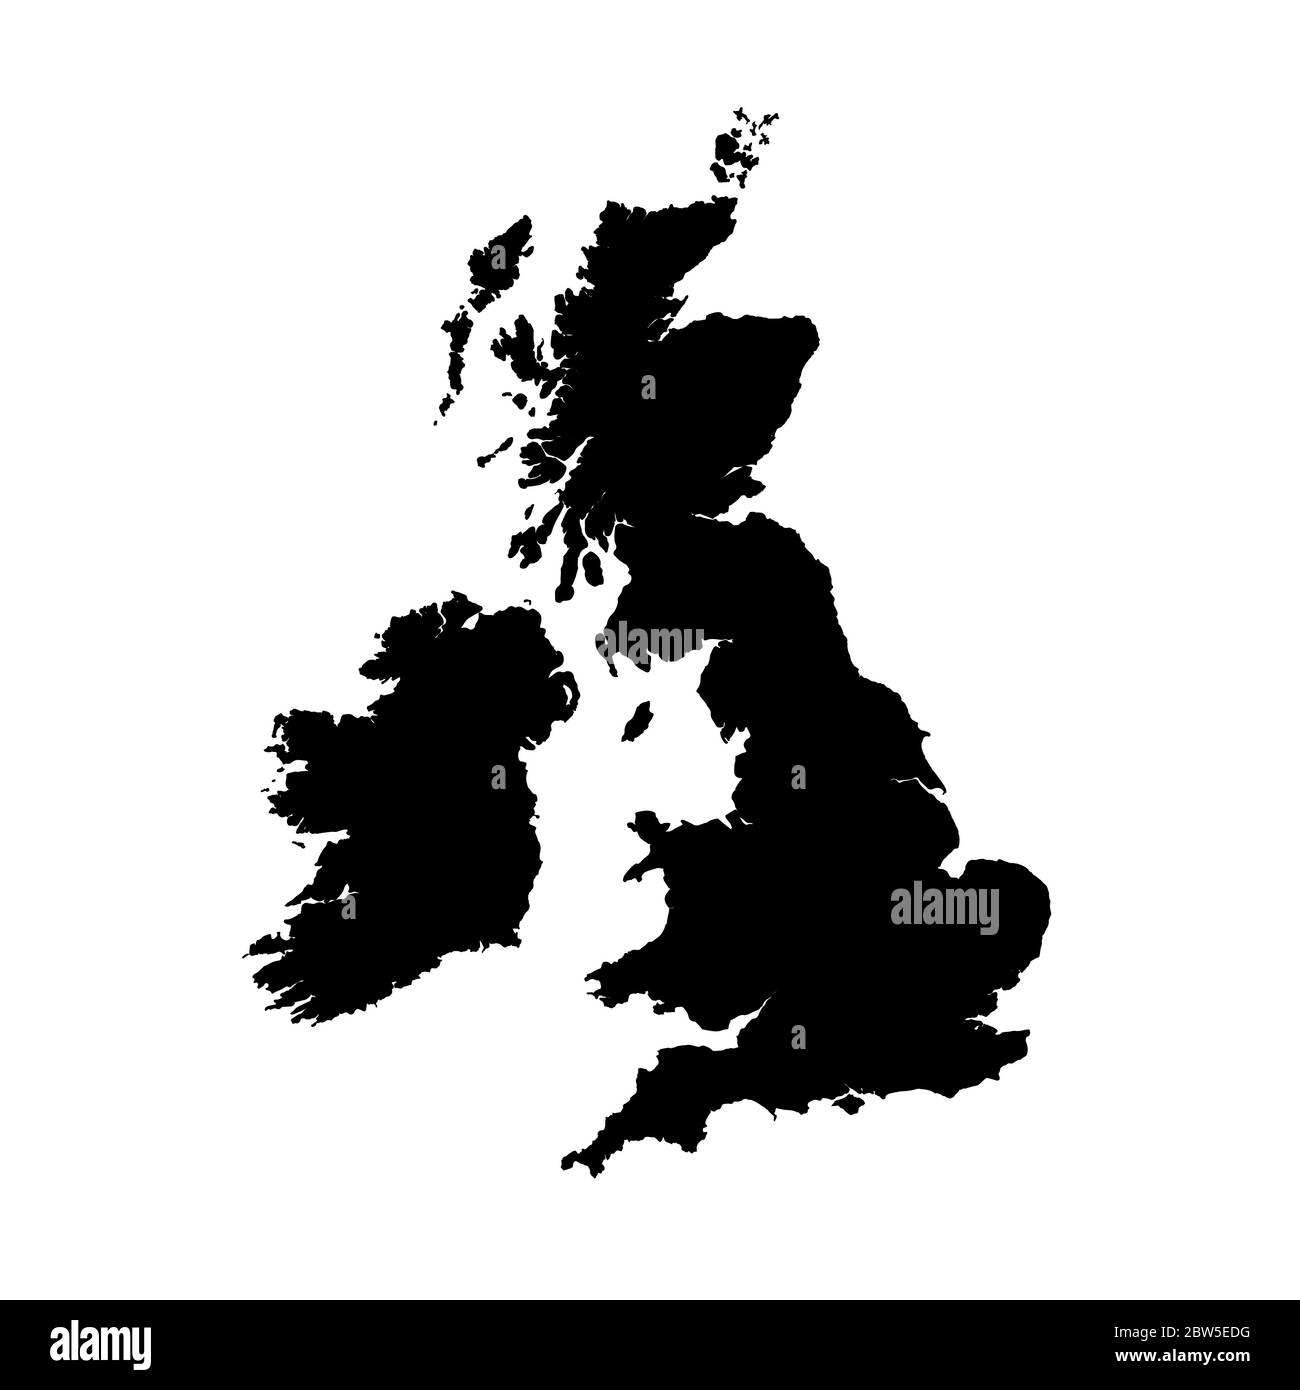 Vektorkarte Großbritannien. Isolierte Vektorgrafik. Schwarz auf weißem Hintergrund. EPS 10-Abbildung. Stock Vektor